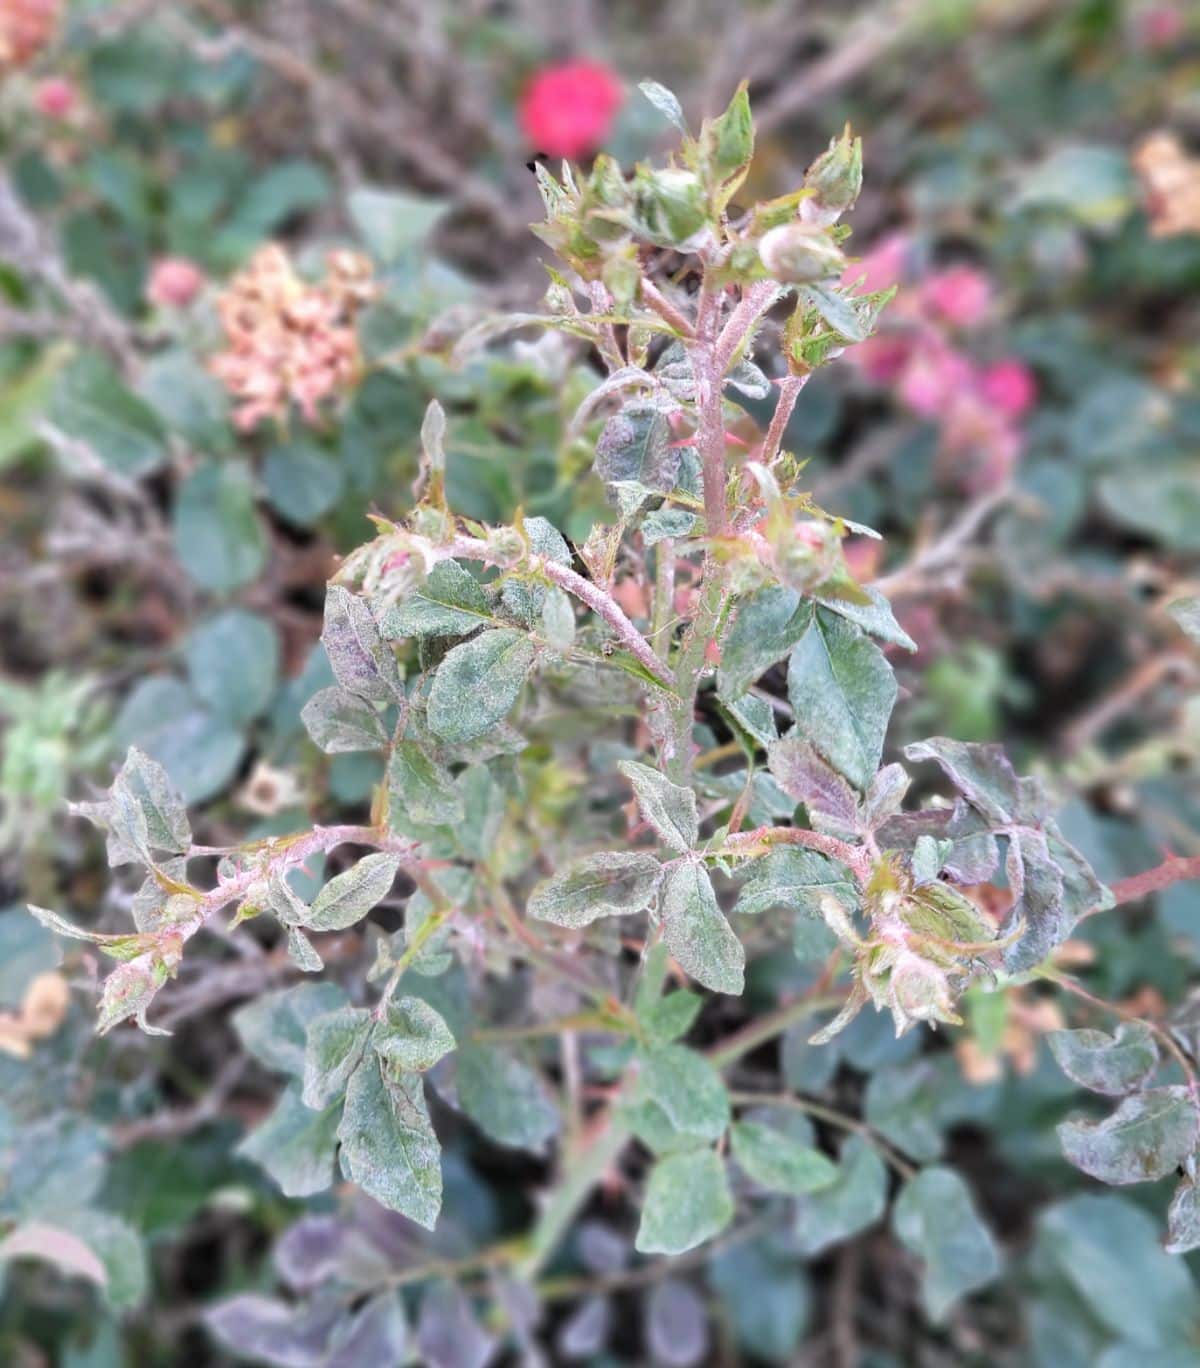 Powdery mildew on a rose bush